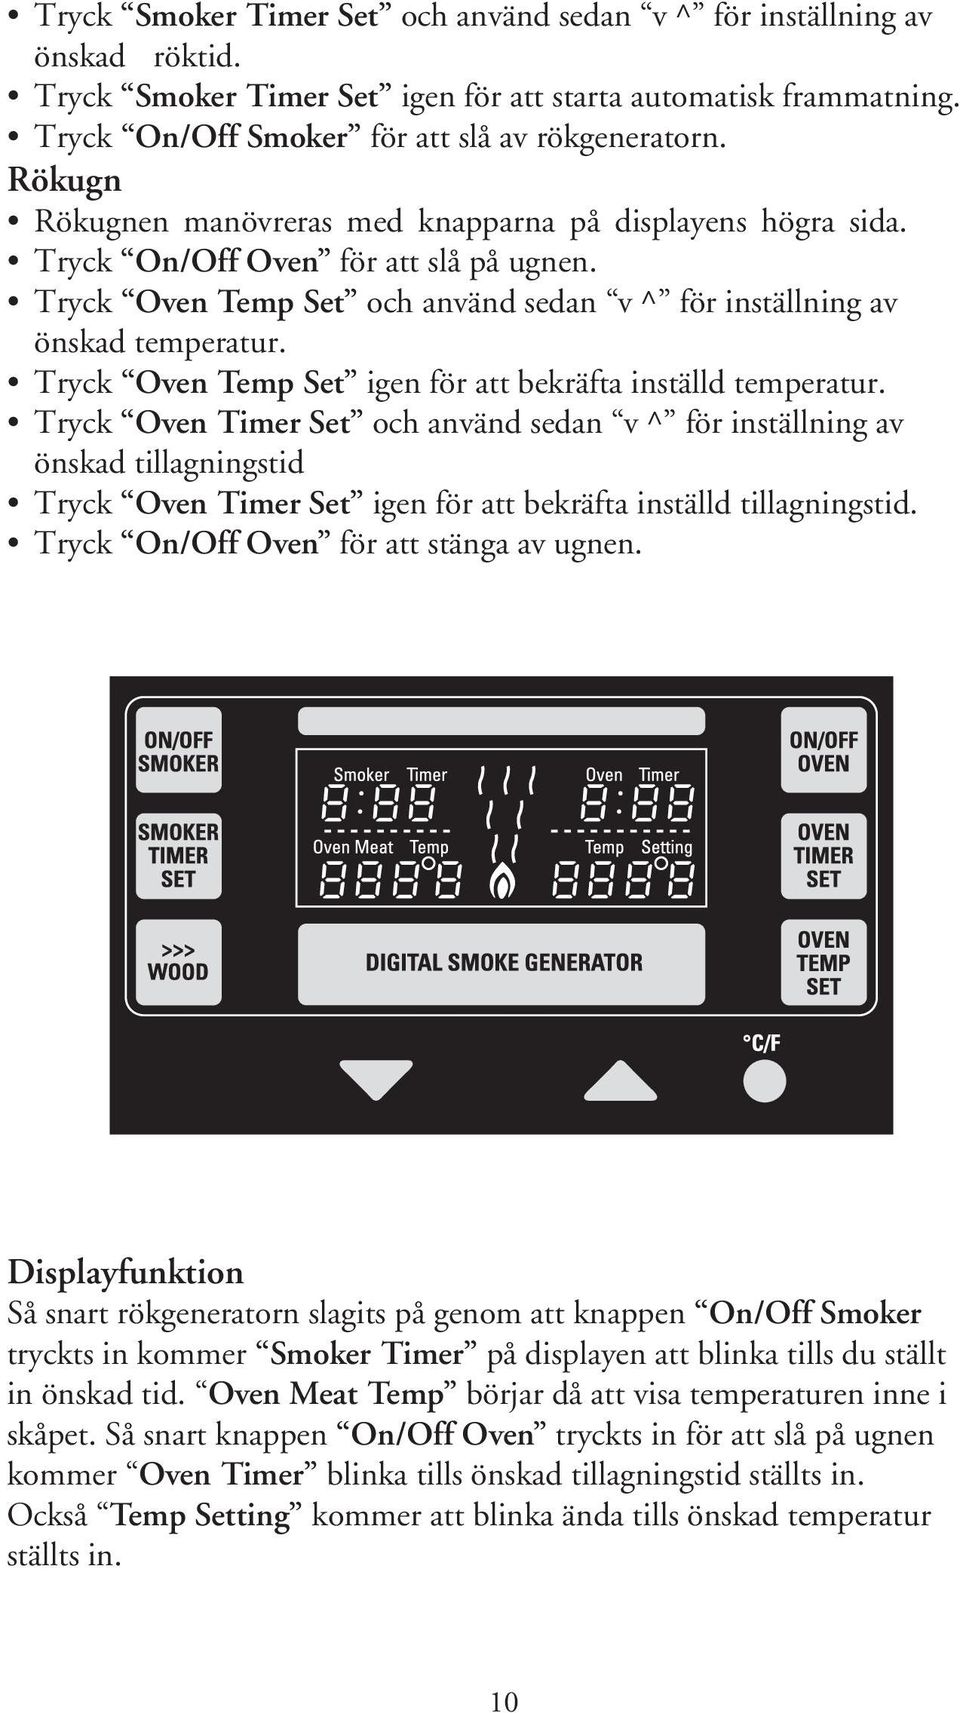 Tryck Oven Temp Set igen för att bekräfta inställd temperatur.